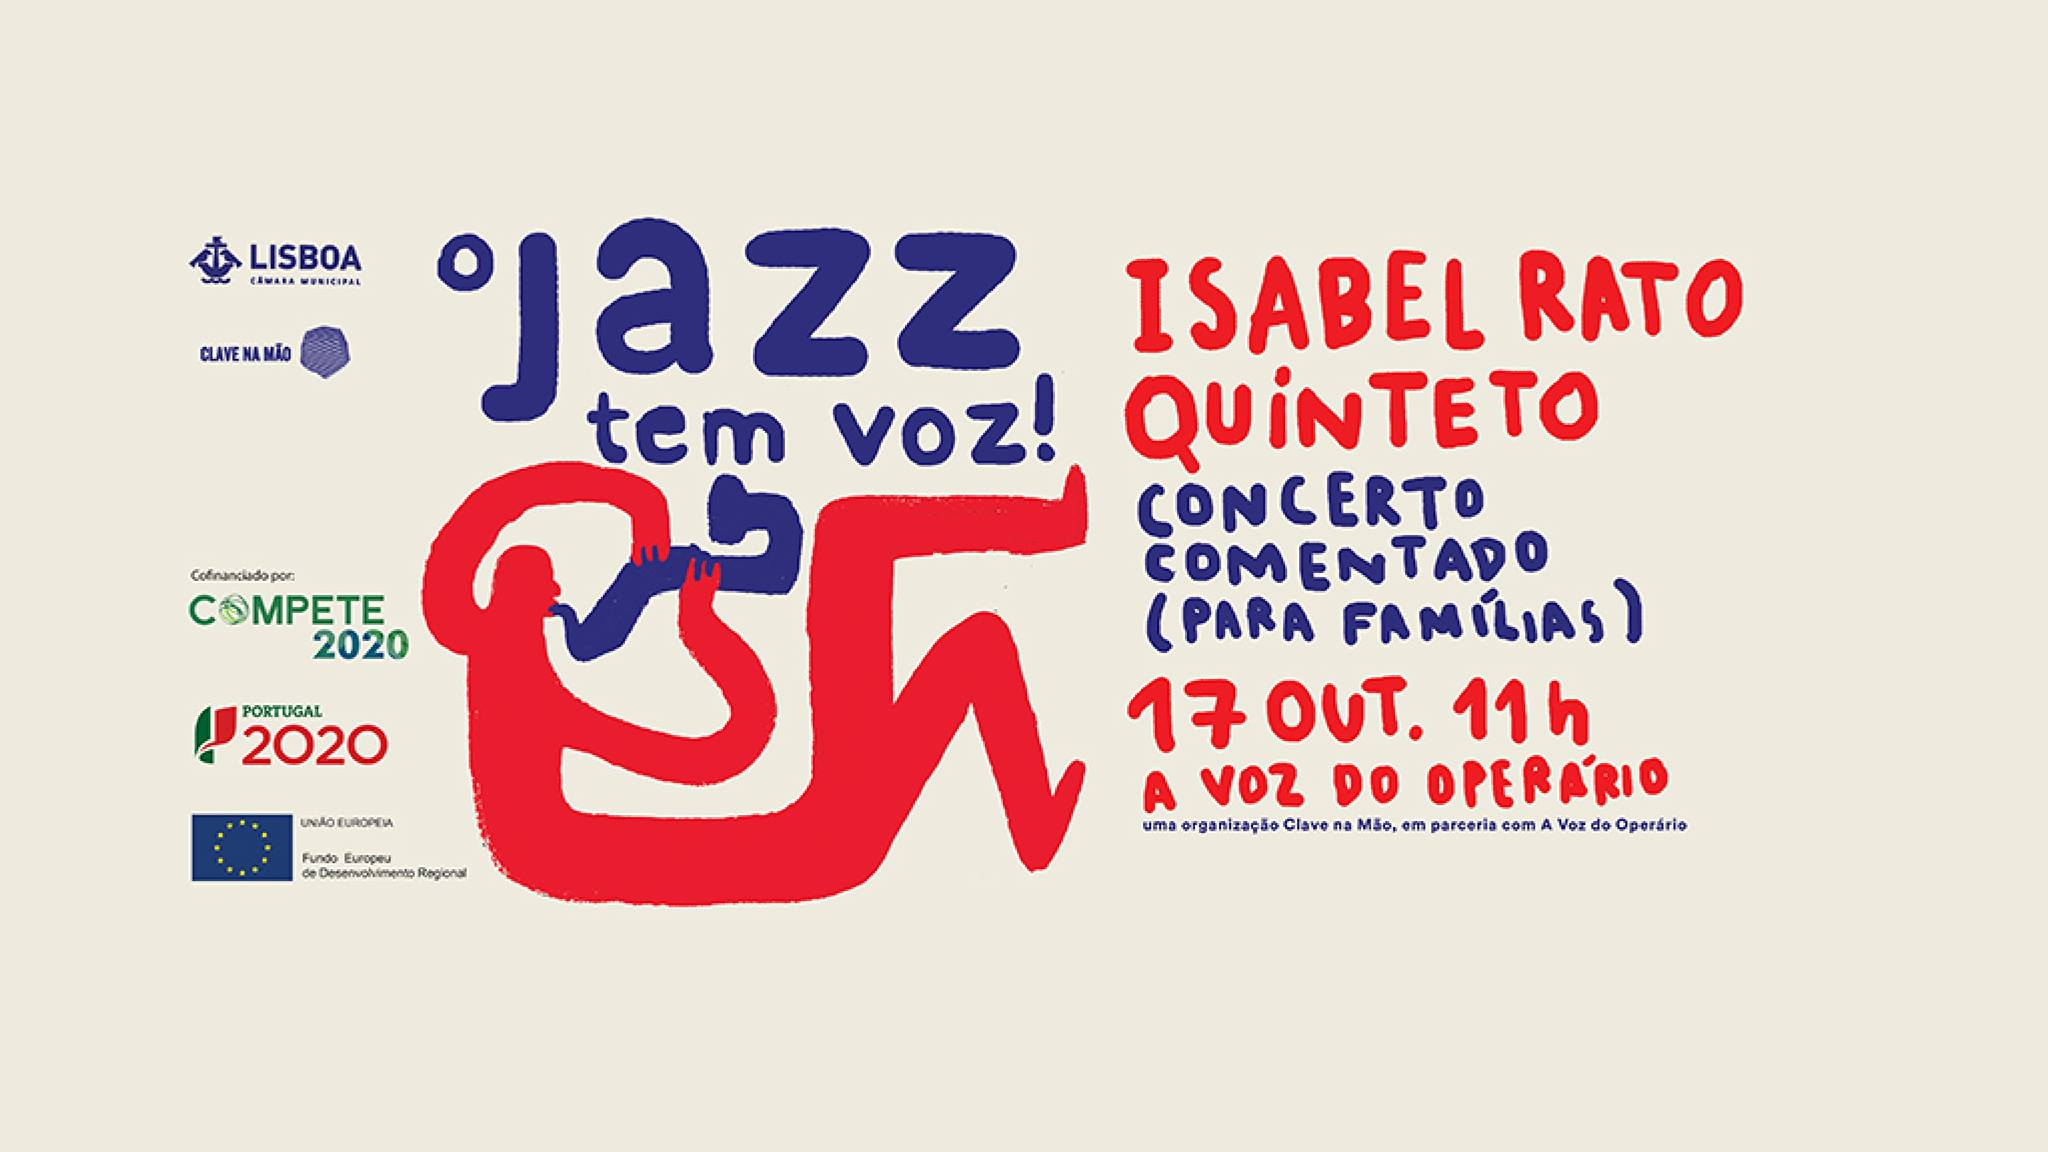 O jazz tem Voz! - Isabel Rato Quinteto - Concerto comentado (para famílias)